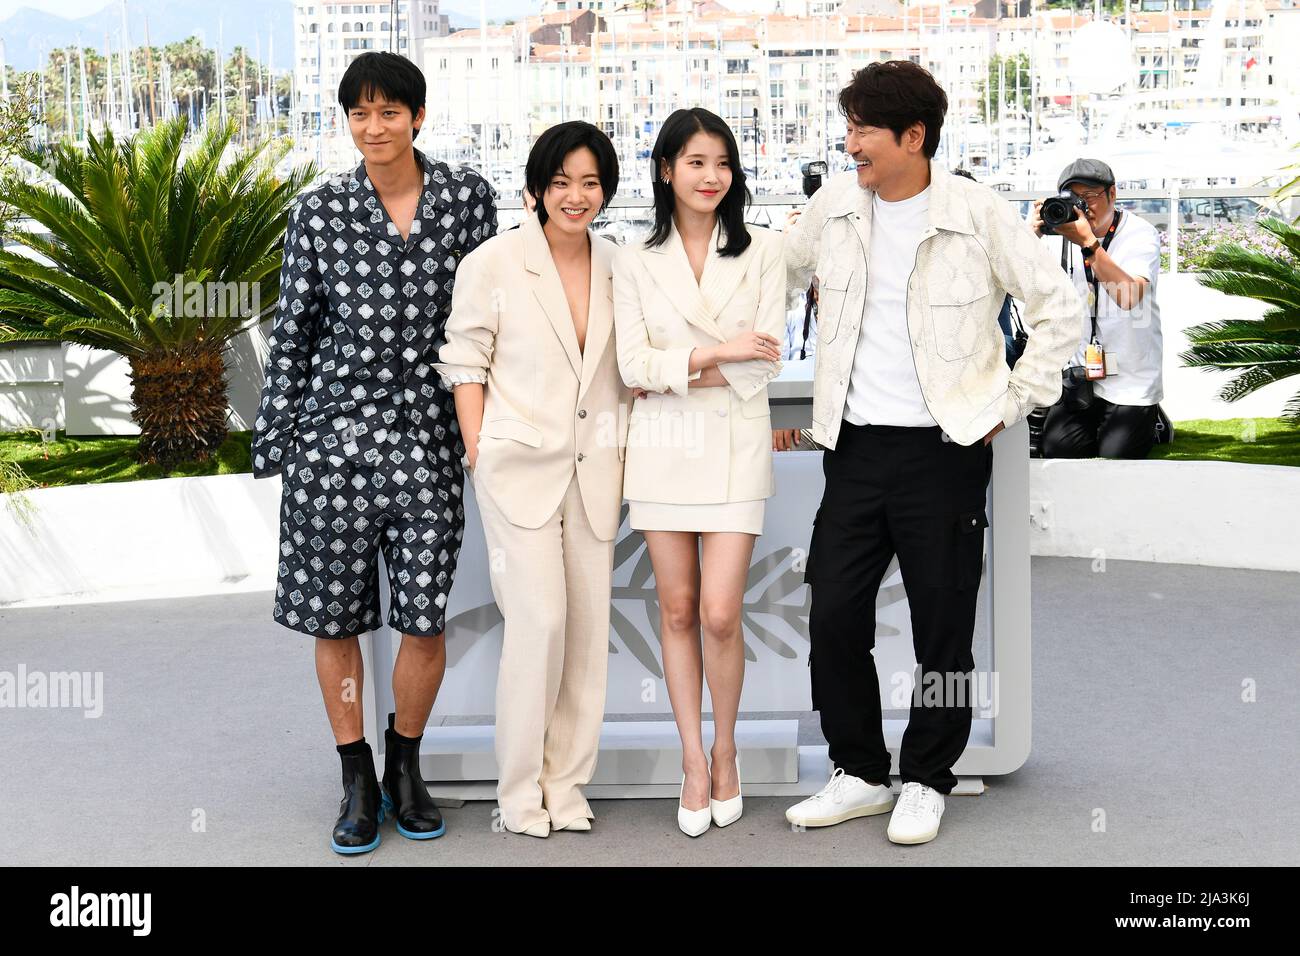 Le Festival de Cannes 75th - Photocall pour le film "Broker" (les bonnes etoiles) en compétition - Cannes, France, 27 mai 2022. Les acteurs Song Kang-ho, Lee Ji-eun (connu sous le nom d'IU), Lee Joo-Young et Gang Dong-Won pose. REUTERS/Piroschka Van de Wouw Banque D'Images